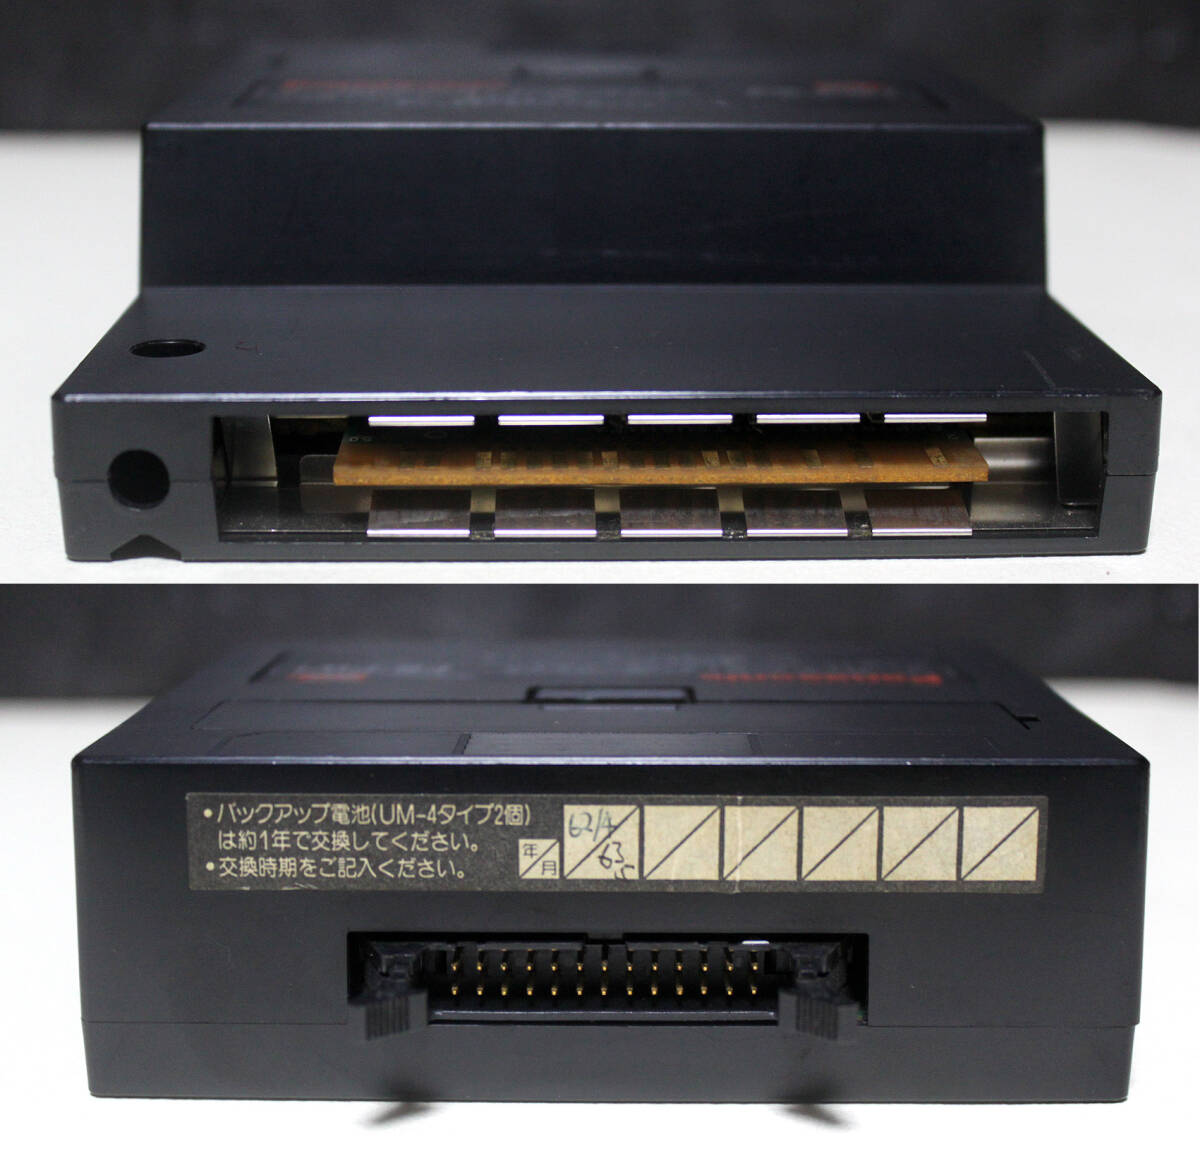  Panasonic MSX2 периферийные устройства [24 точка . транскрипция текстовой процессор * принтер FS-PW1] утиль | Showa Retro, Vintage 